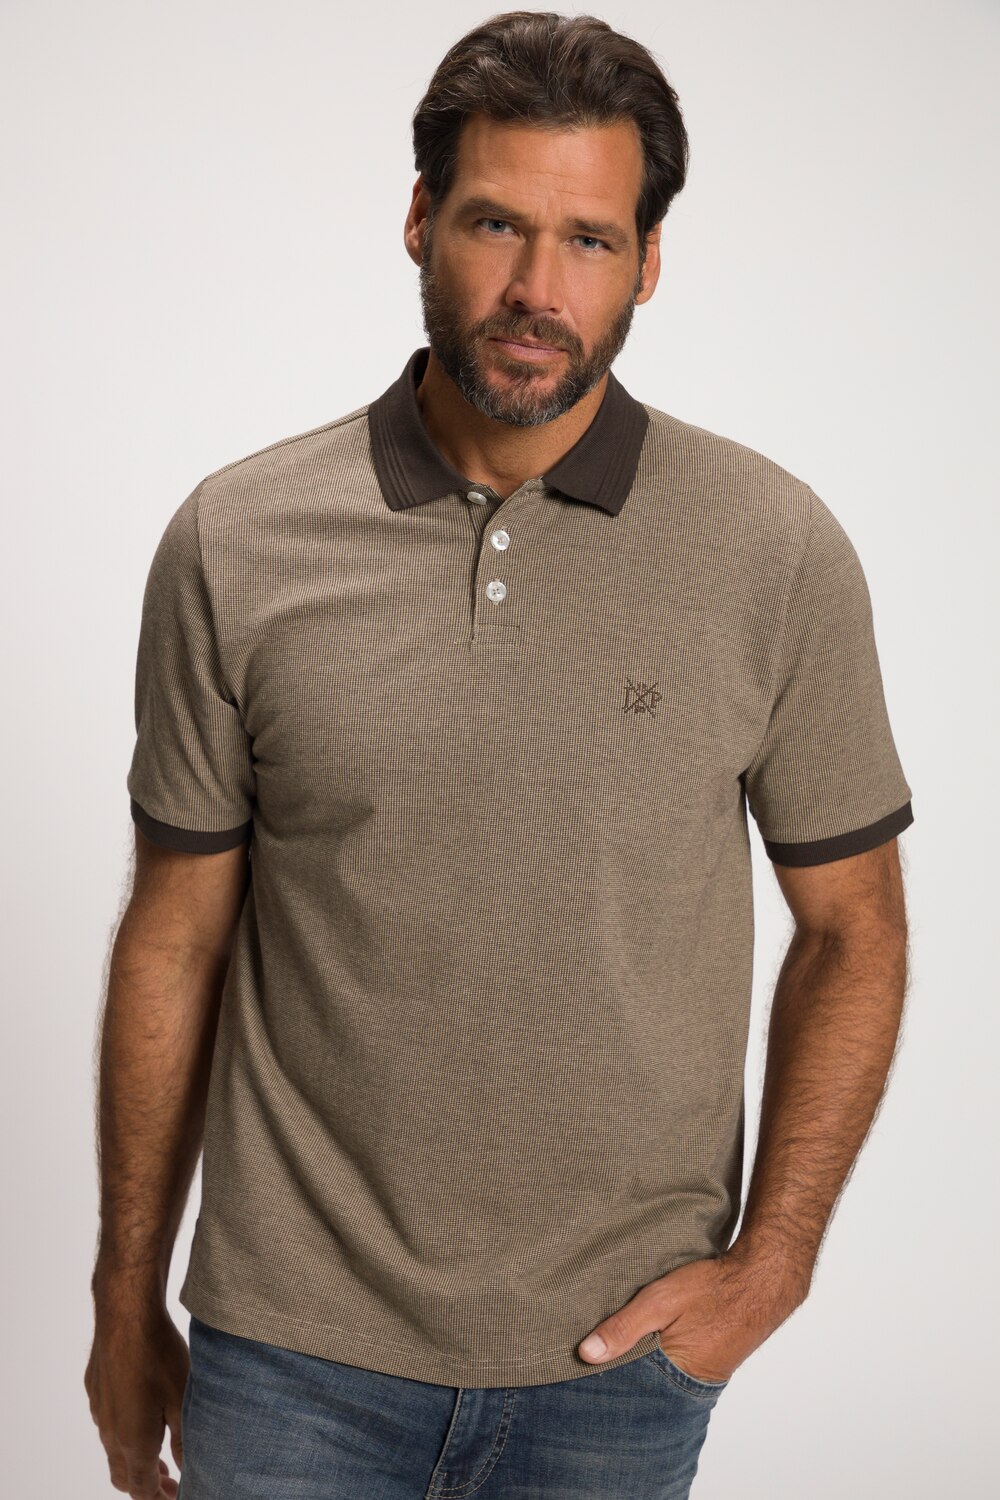 Plus Size Short Sleeve Polo Shirt, Man, beige, size: 3XL, cotton, JP1880